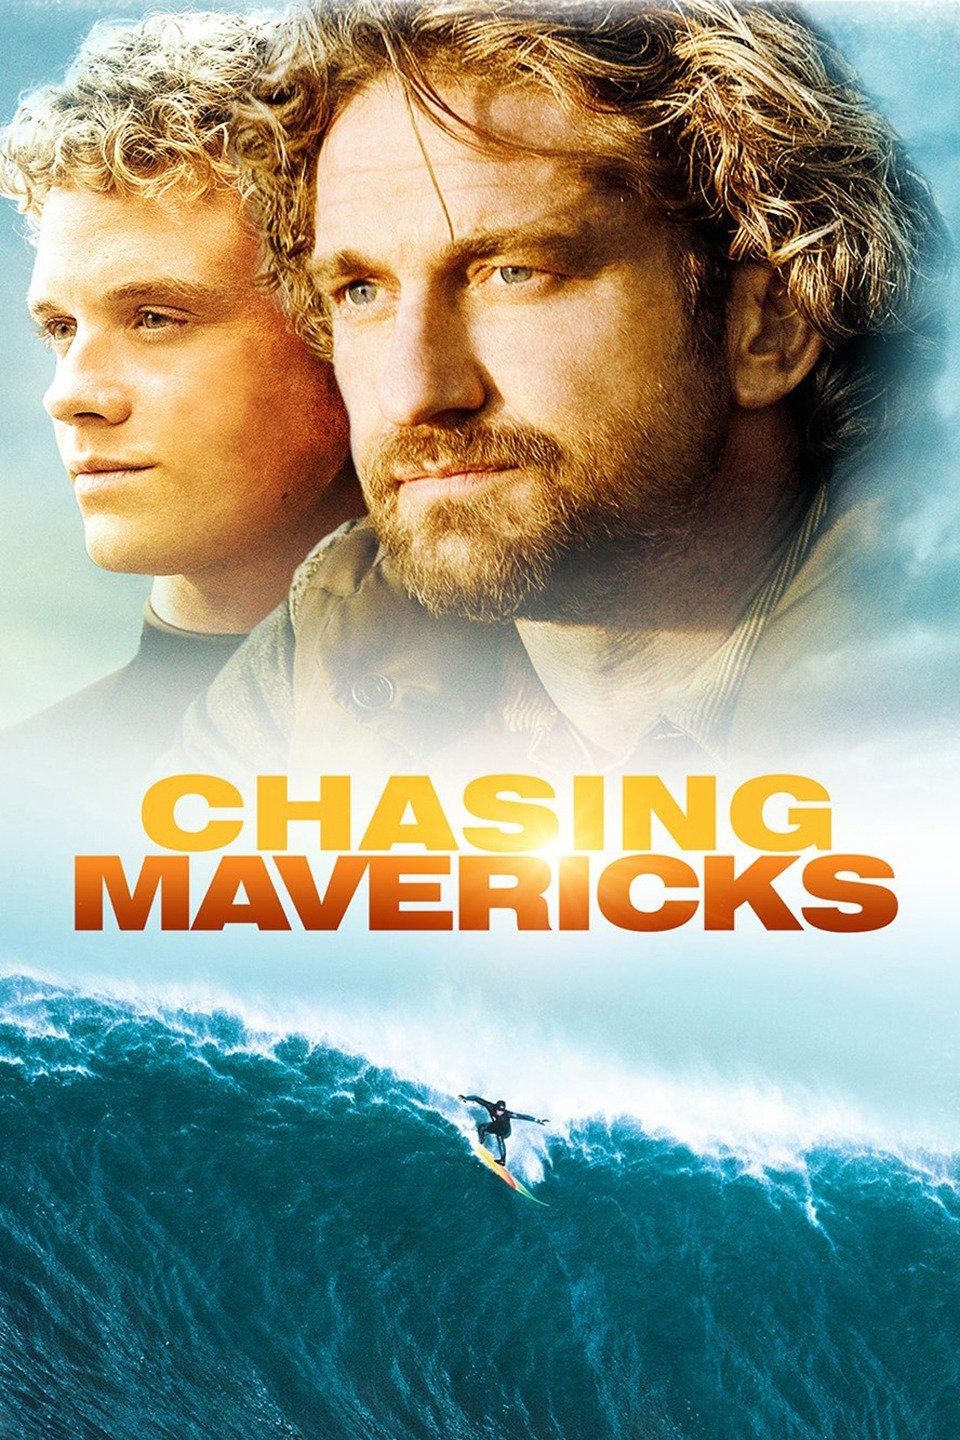 chasing mavericks movie review